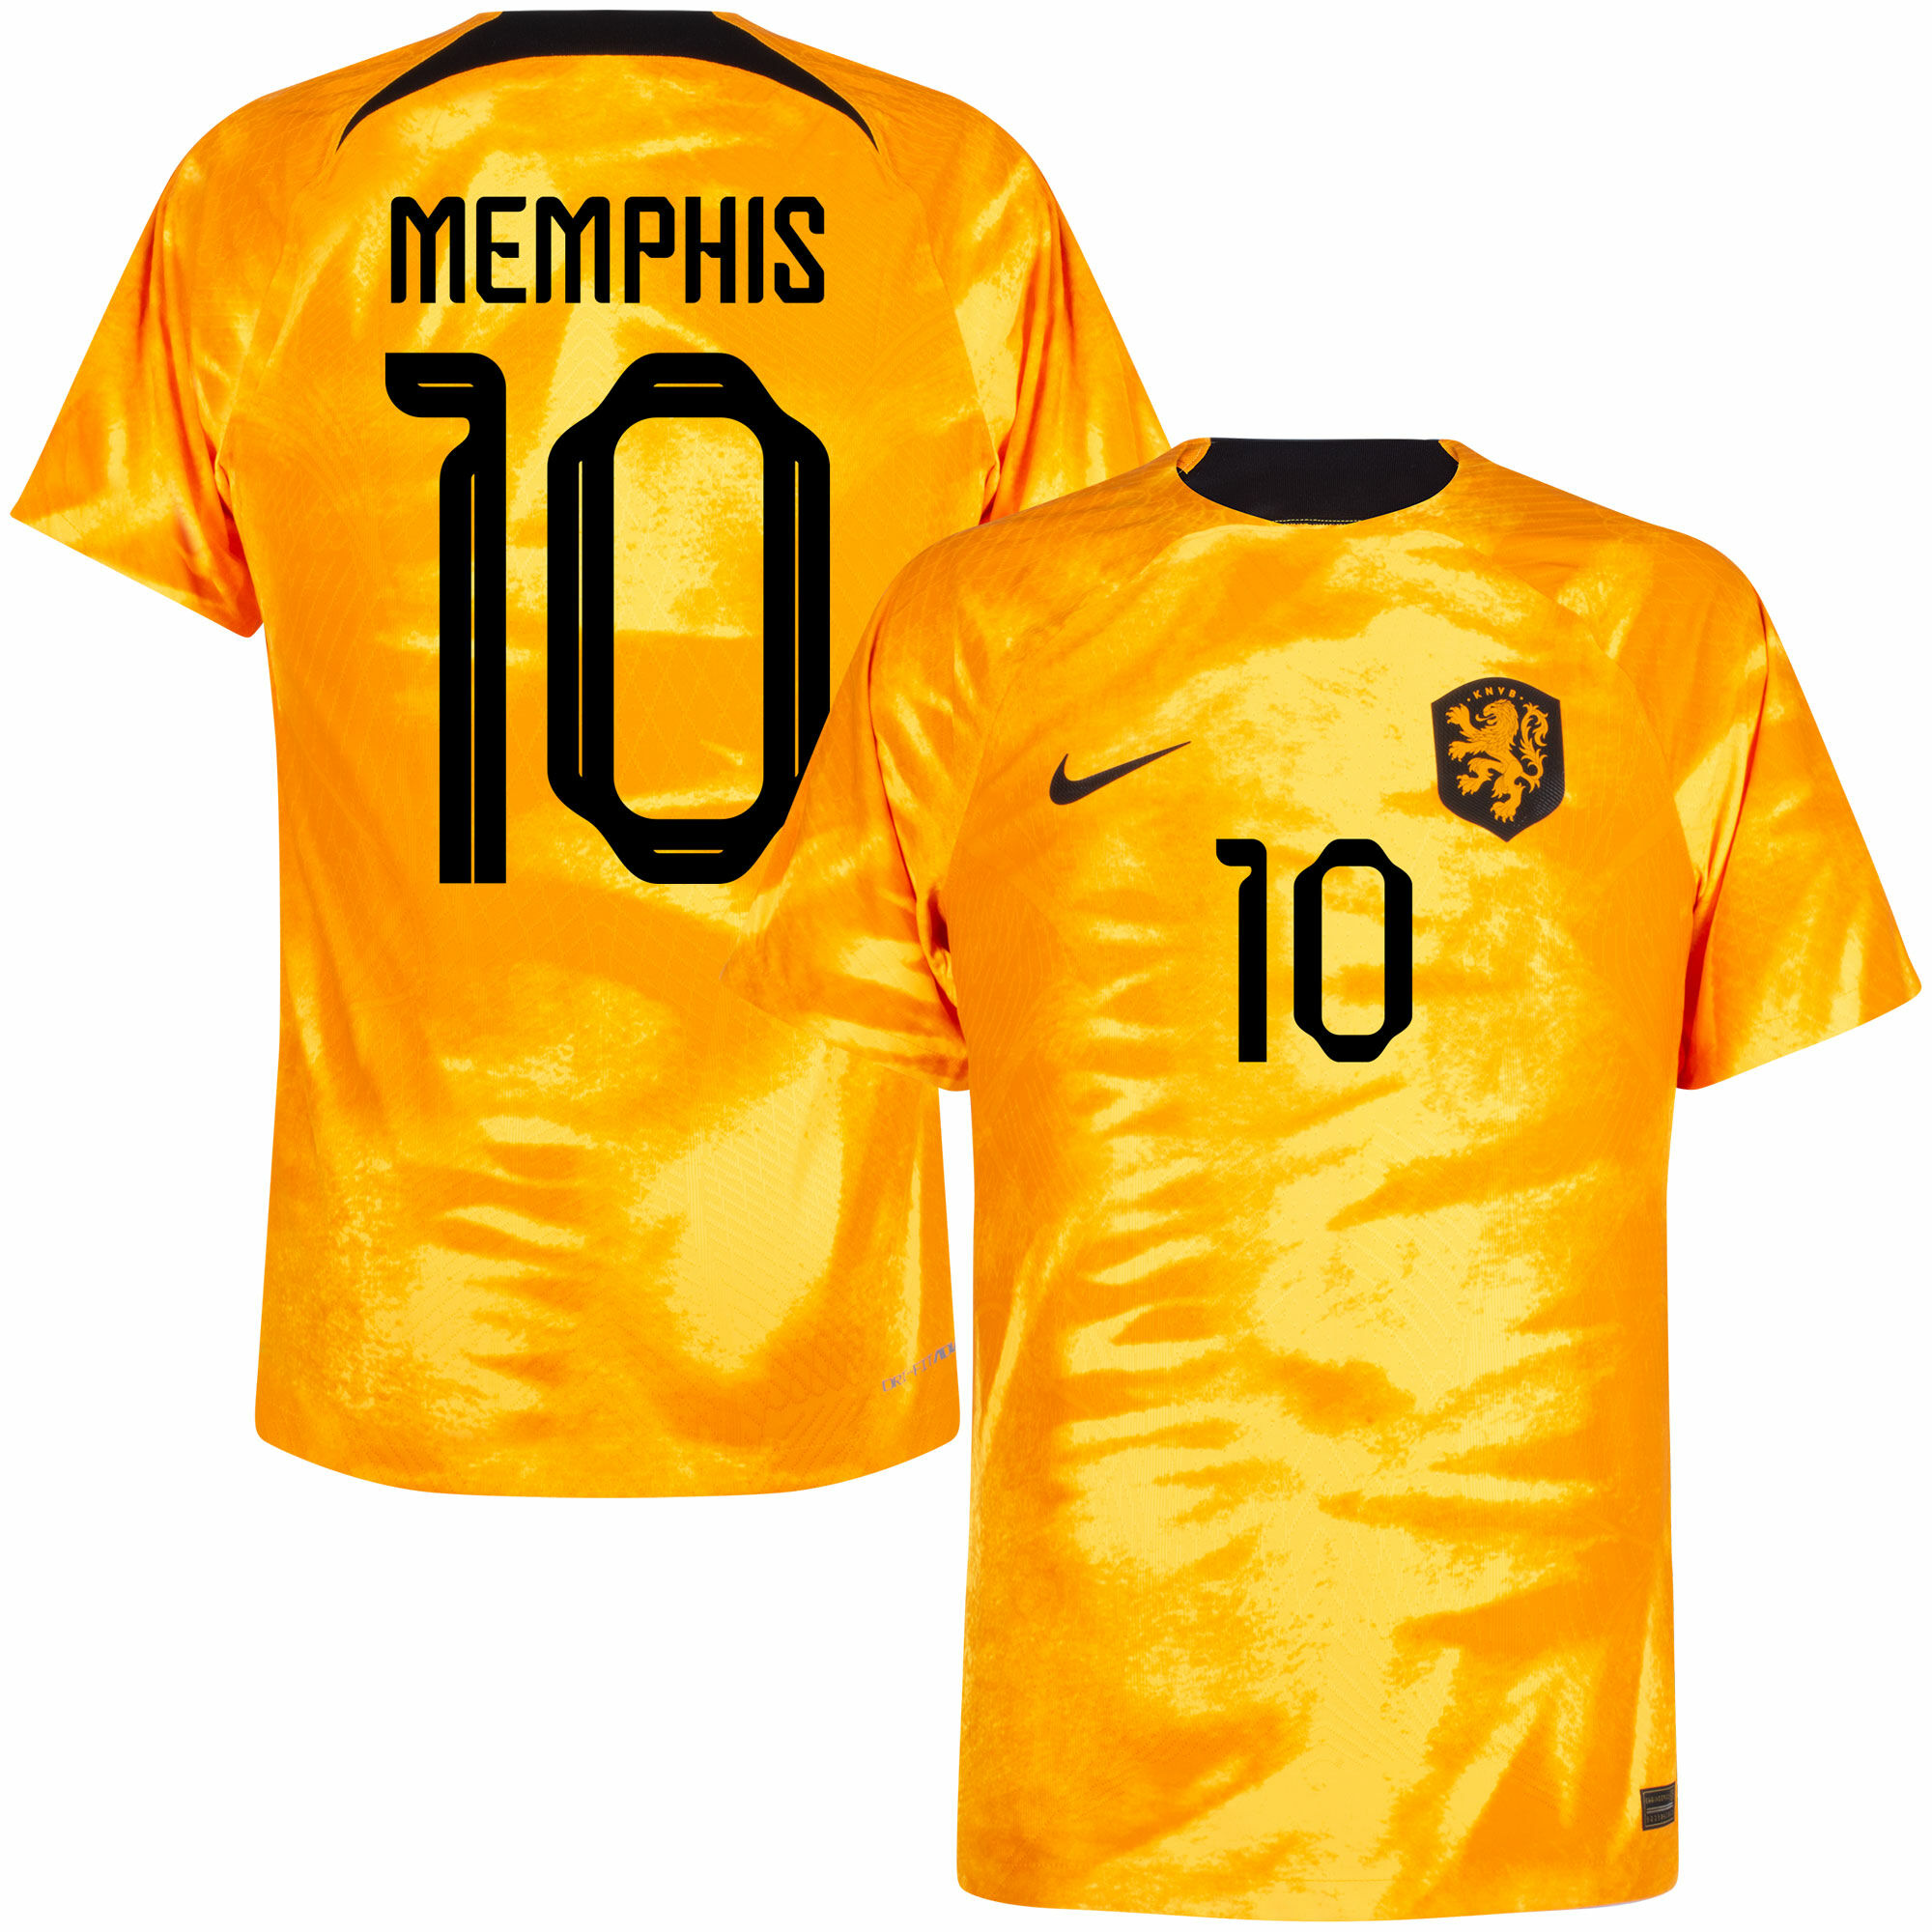 Nizozemí - Dres fotbalový "Match" - Memphis Depay, oranžový, oficiální potisk, číslo 10, domácí, sezóna 2022/23, Dri-FIT ADV